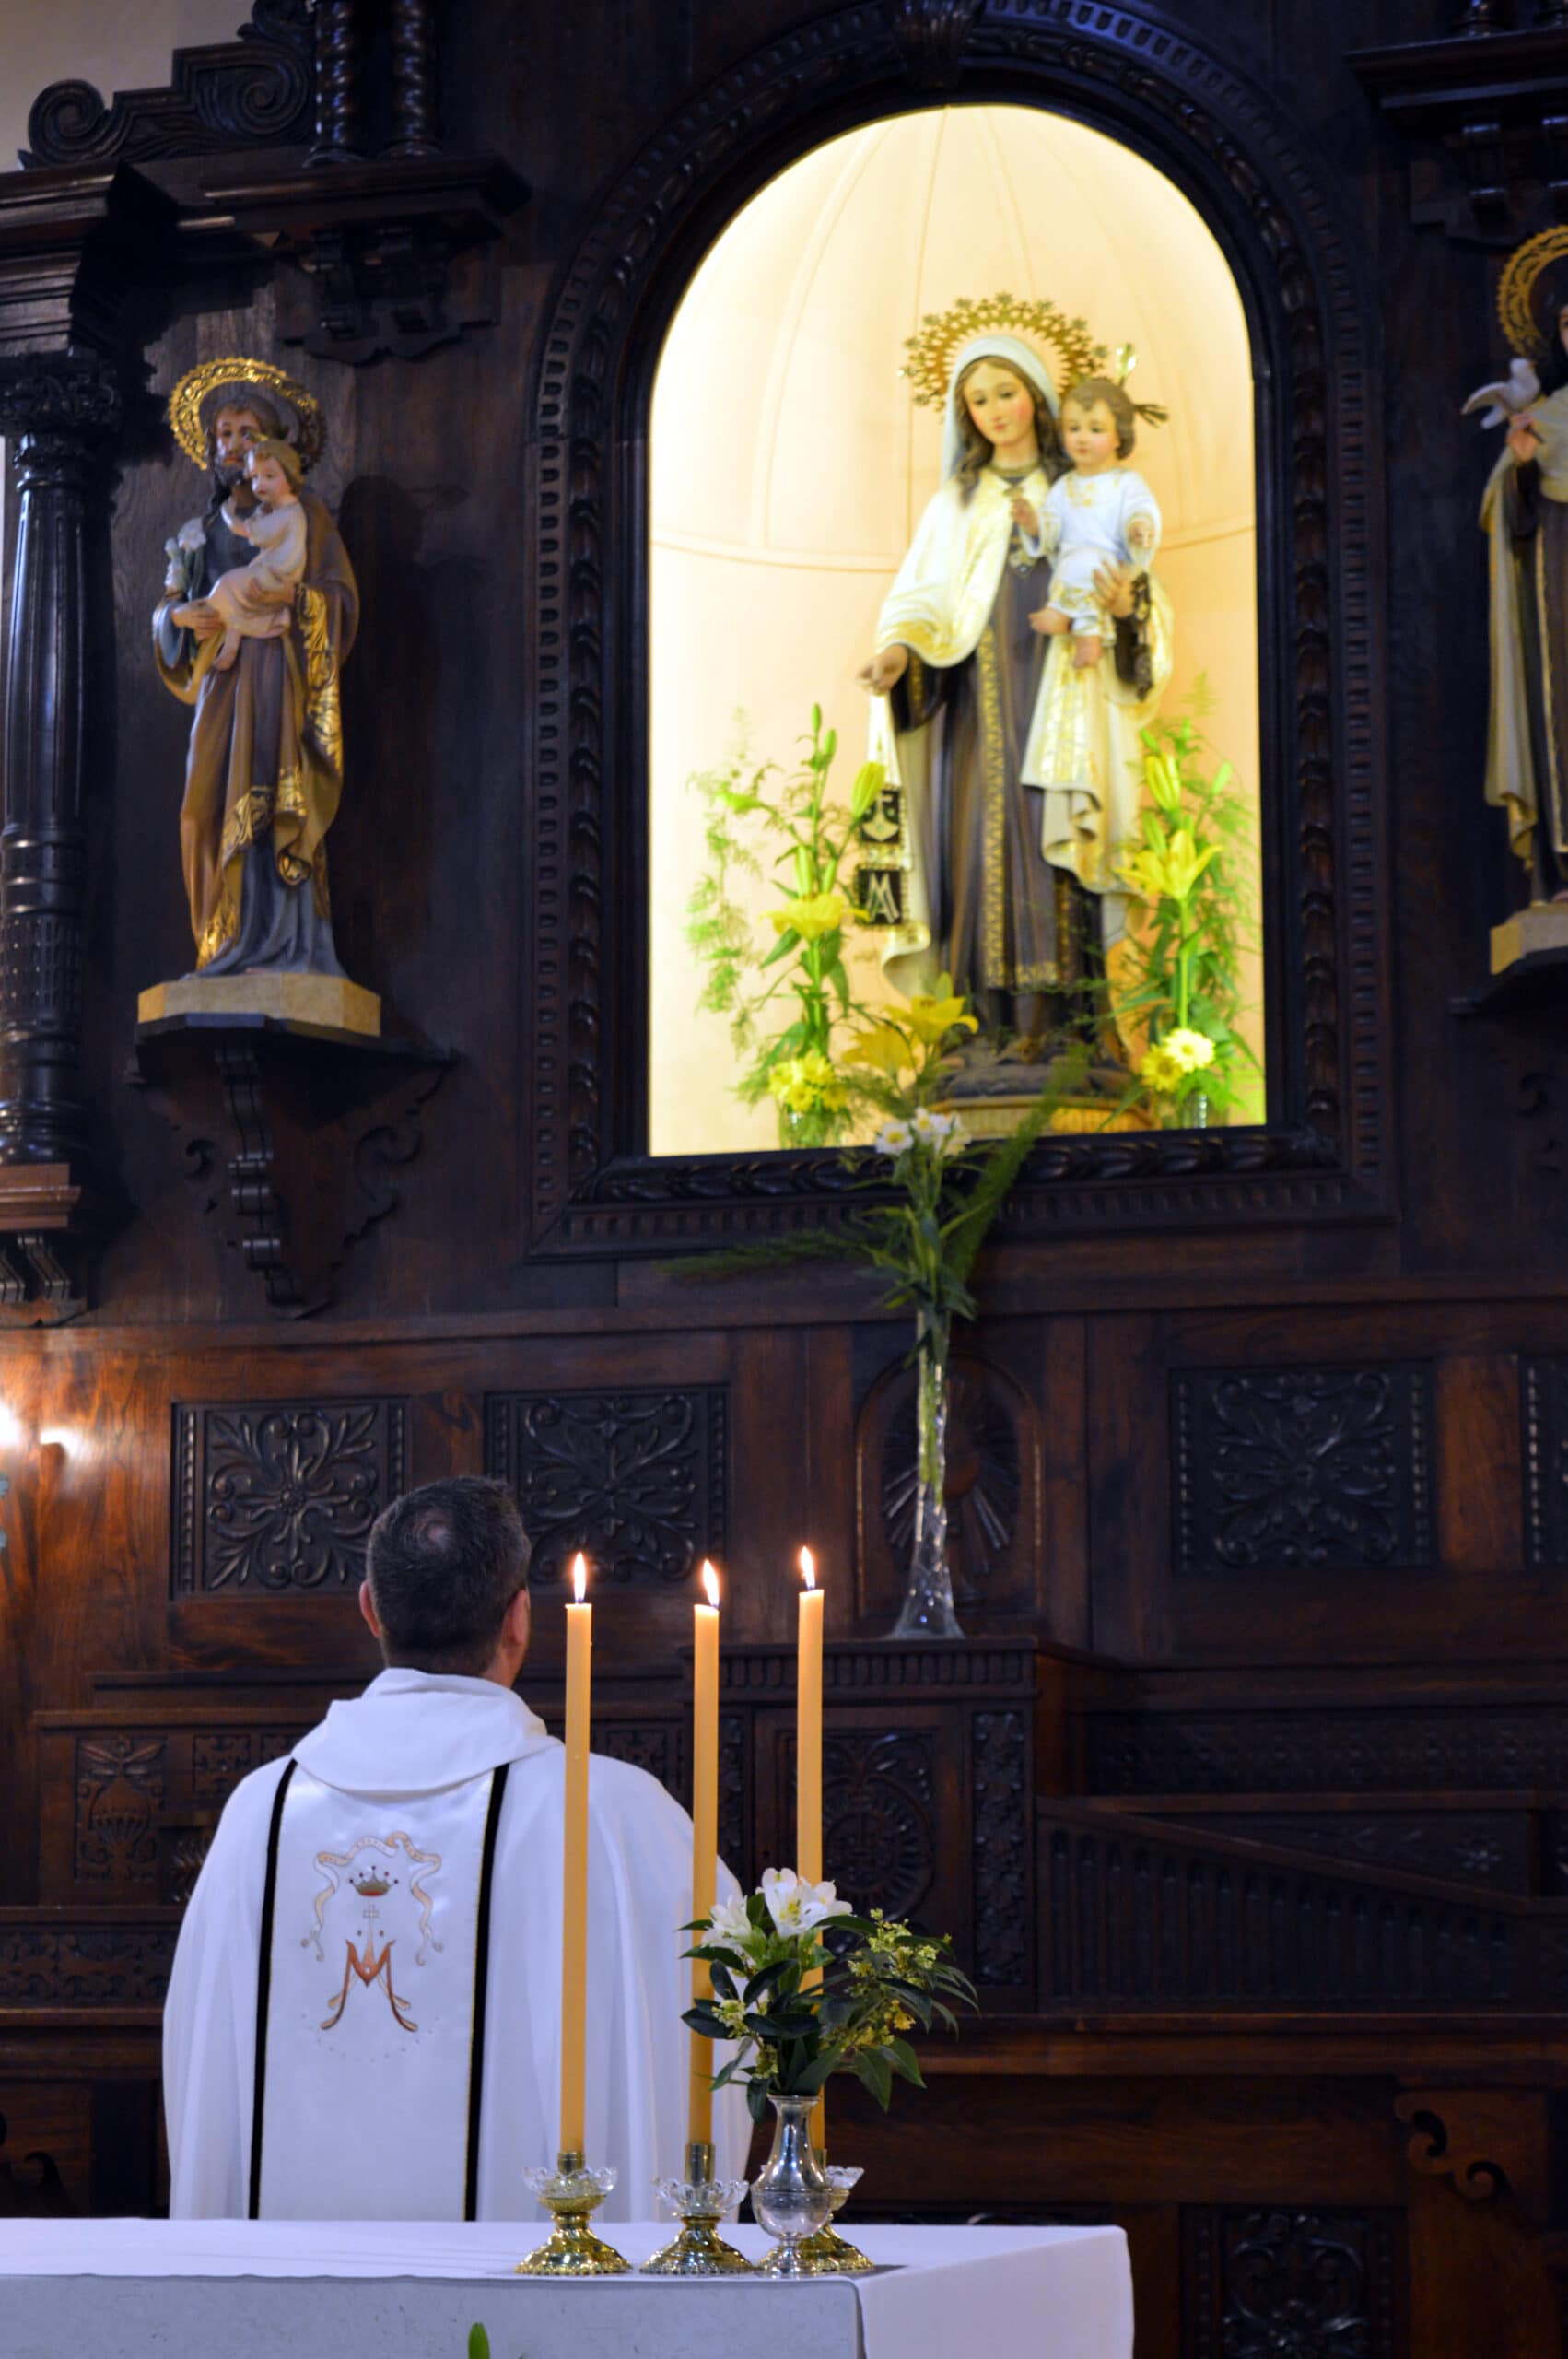 La Virgen María en la liturgia de la Iglesia — Tolkian